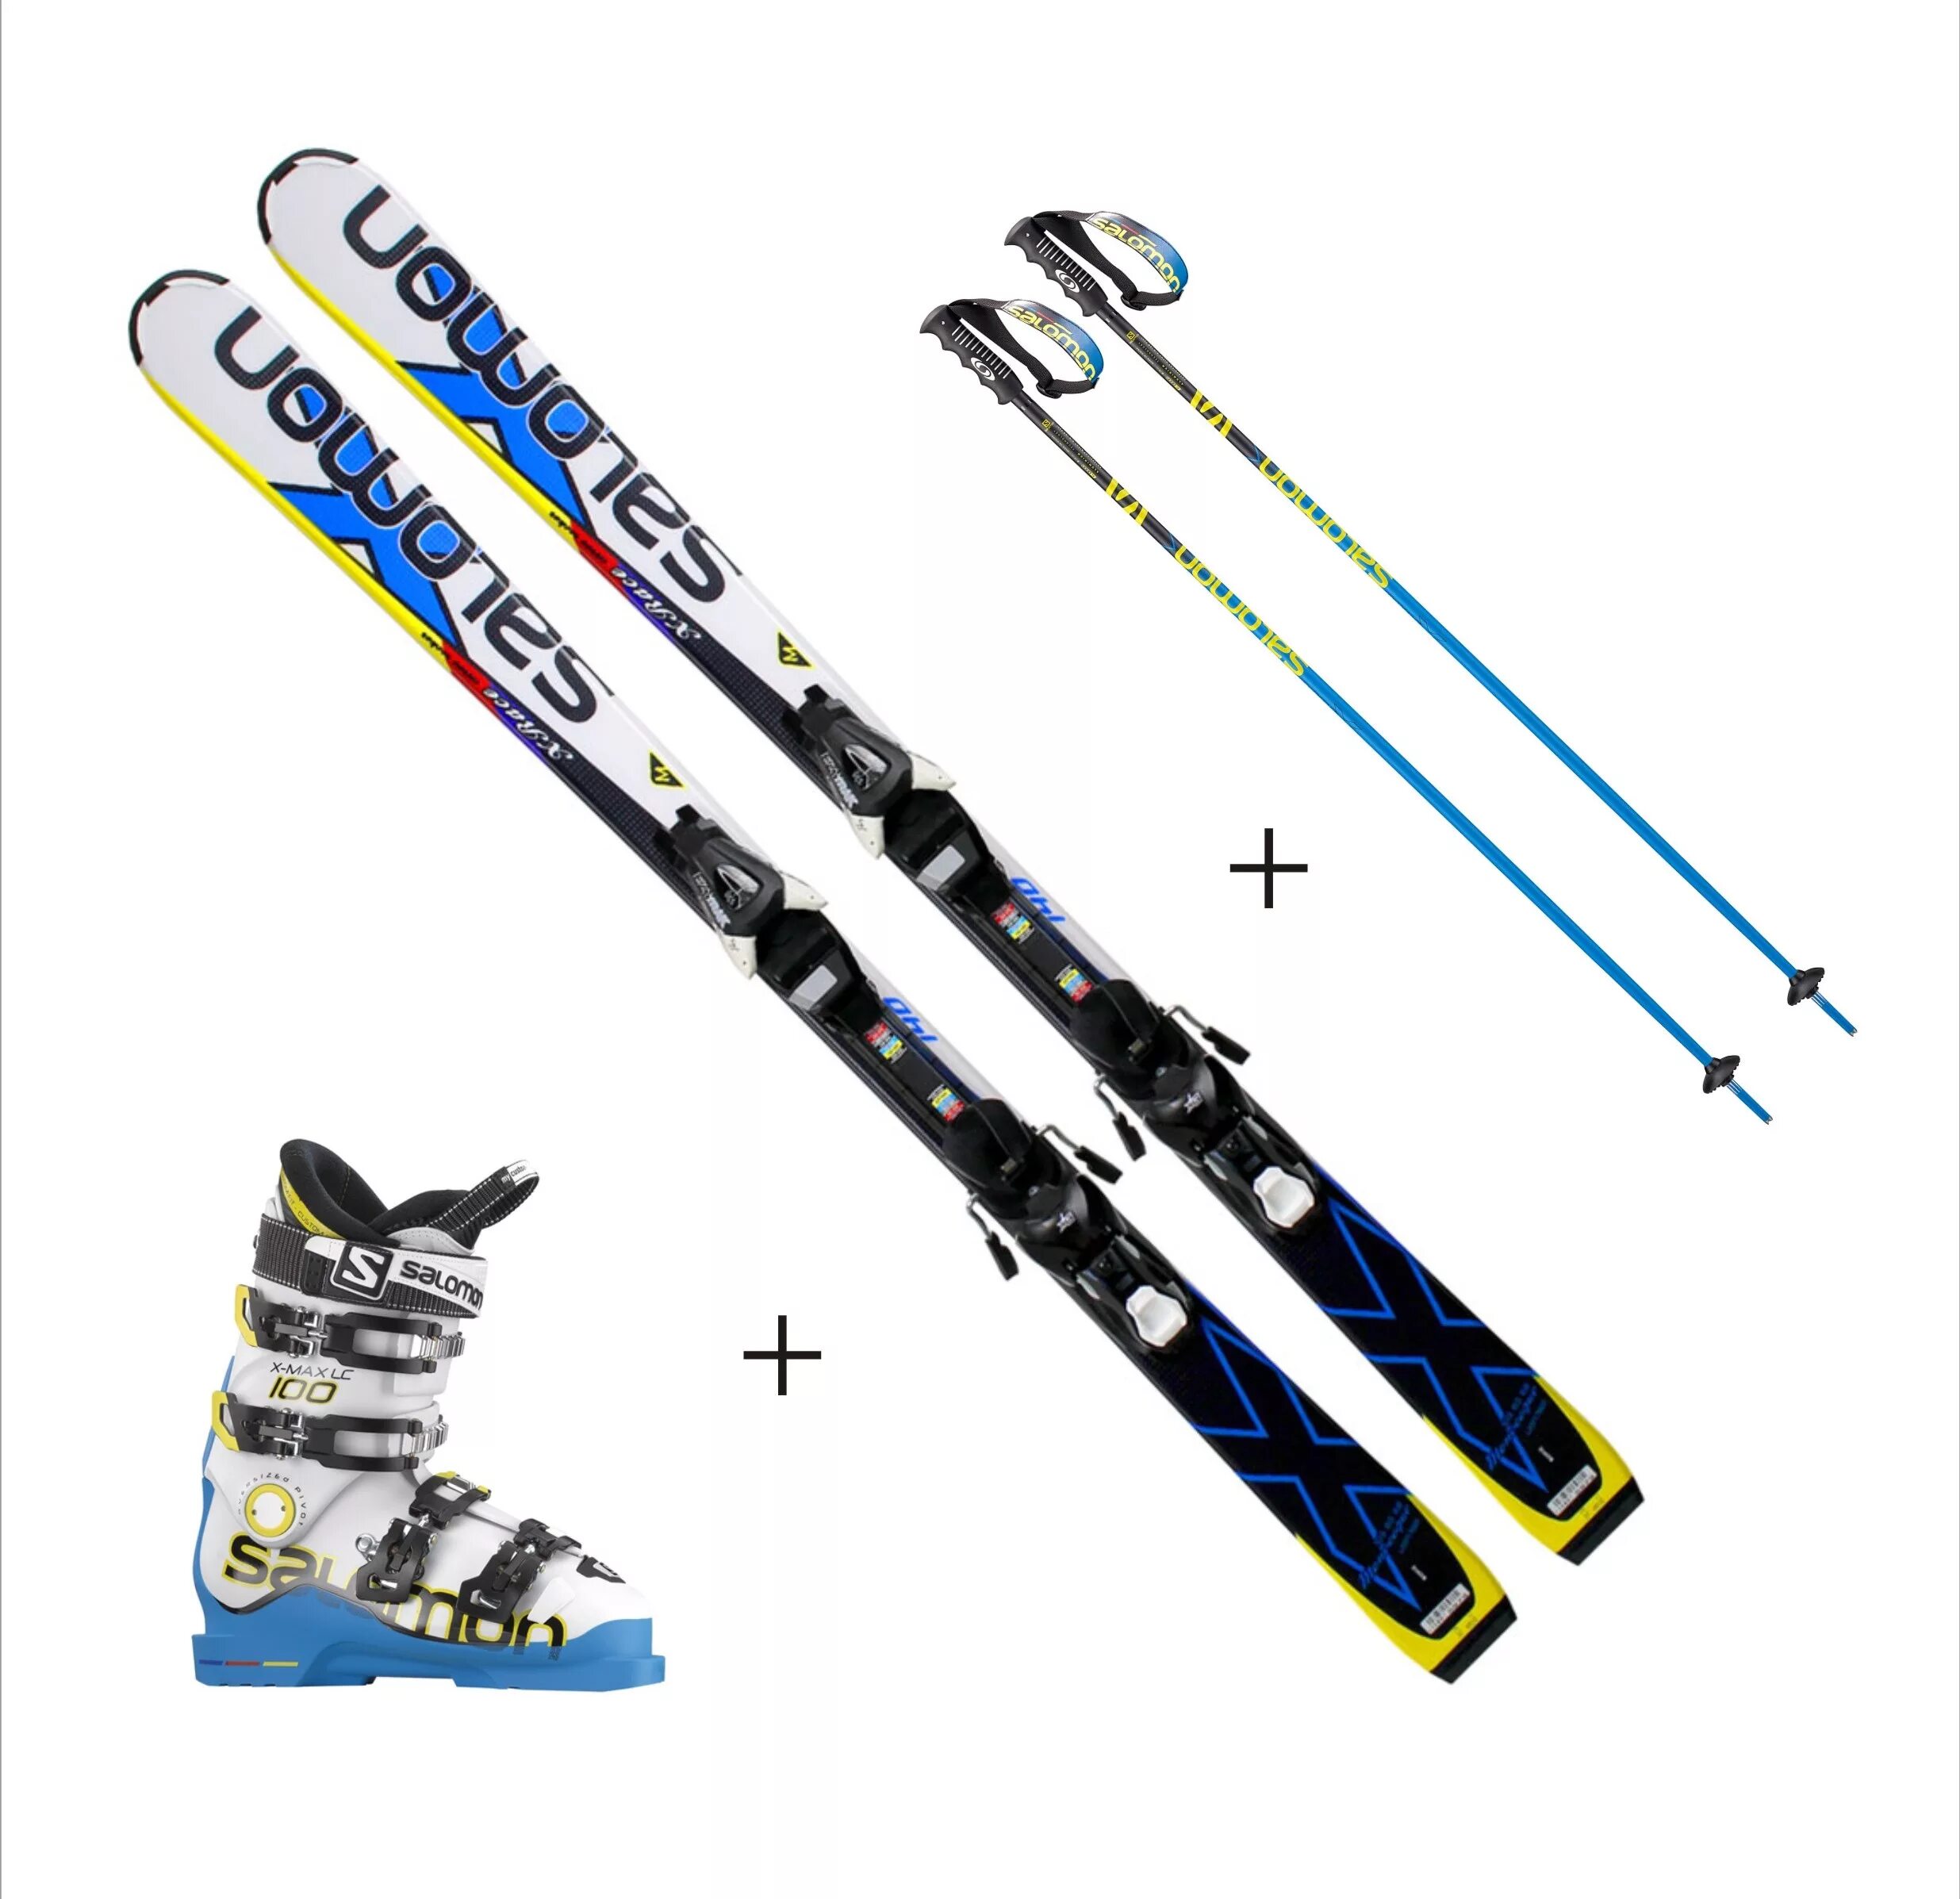 Спортивные лыжи Фишер горные лыжи. Горные лыжи спортцех 165 SL Nordica. Горные лыжи Hart f17. Горные лыжи XT 200. Спортивные лыжи купить